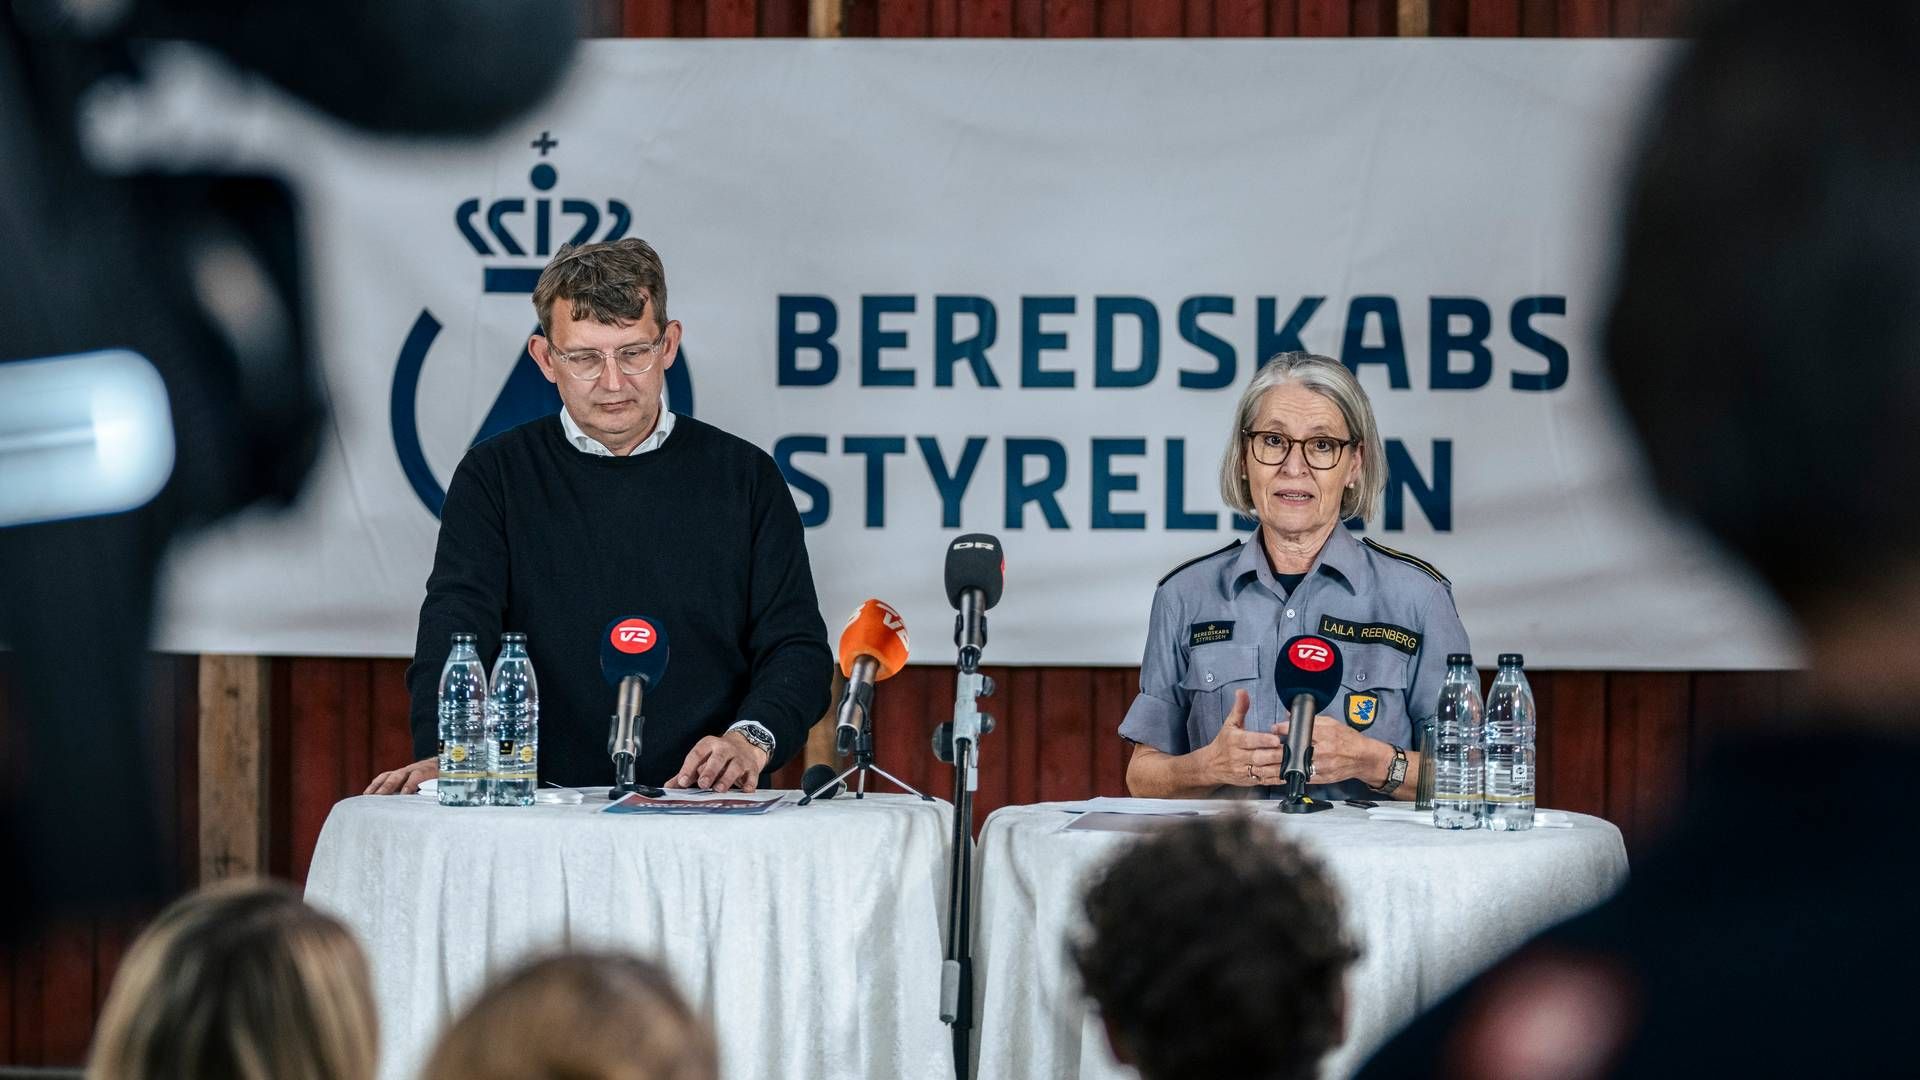 Forsvarsminister Troels Lund Poulsen (V) præsenterede lørdag på Folkemødets hovedscene nye beredskabsråd, som myndighederne vil give til danskerne som forberedelse på hybridkrig og kriser. | Foto: Thomas Traasdahl